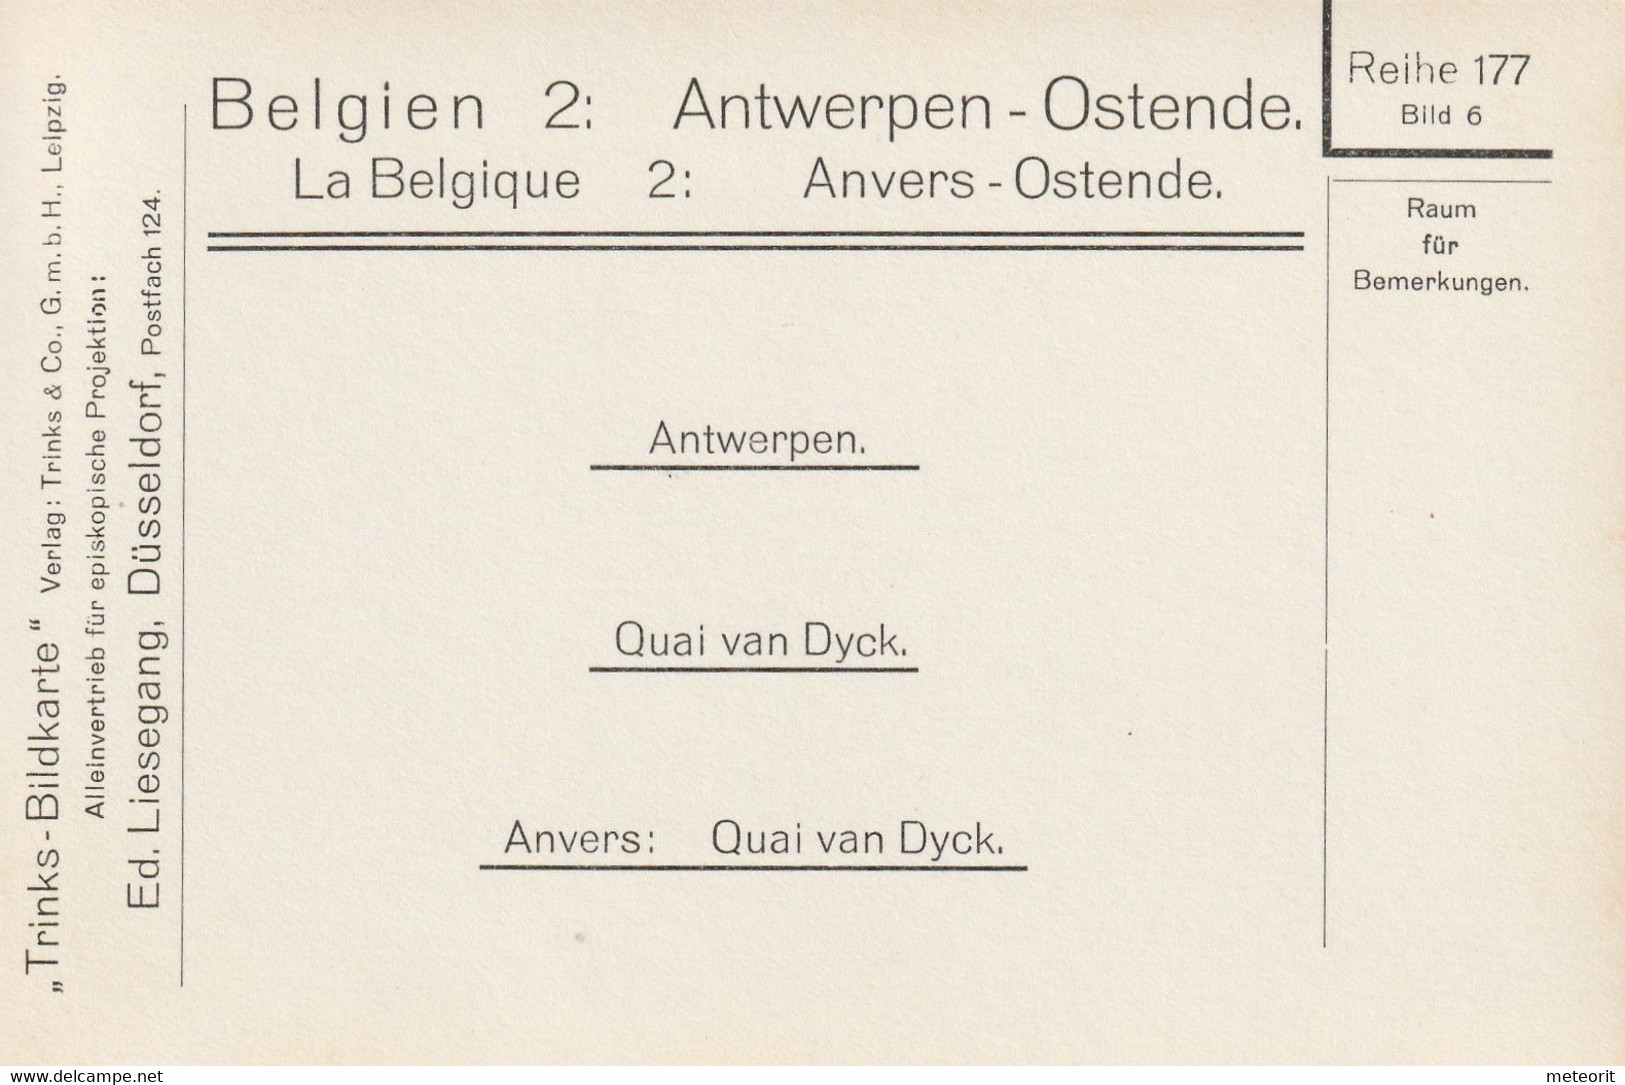 Trinks-Bildkarte, komplette Serie, Epi-Reihe 177 Belgien 2 Antwerpen + Ostende, 12 Karten 9 x 12 cm, sehr gute Erhaltung